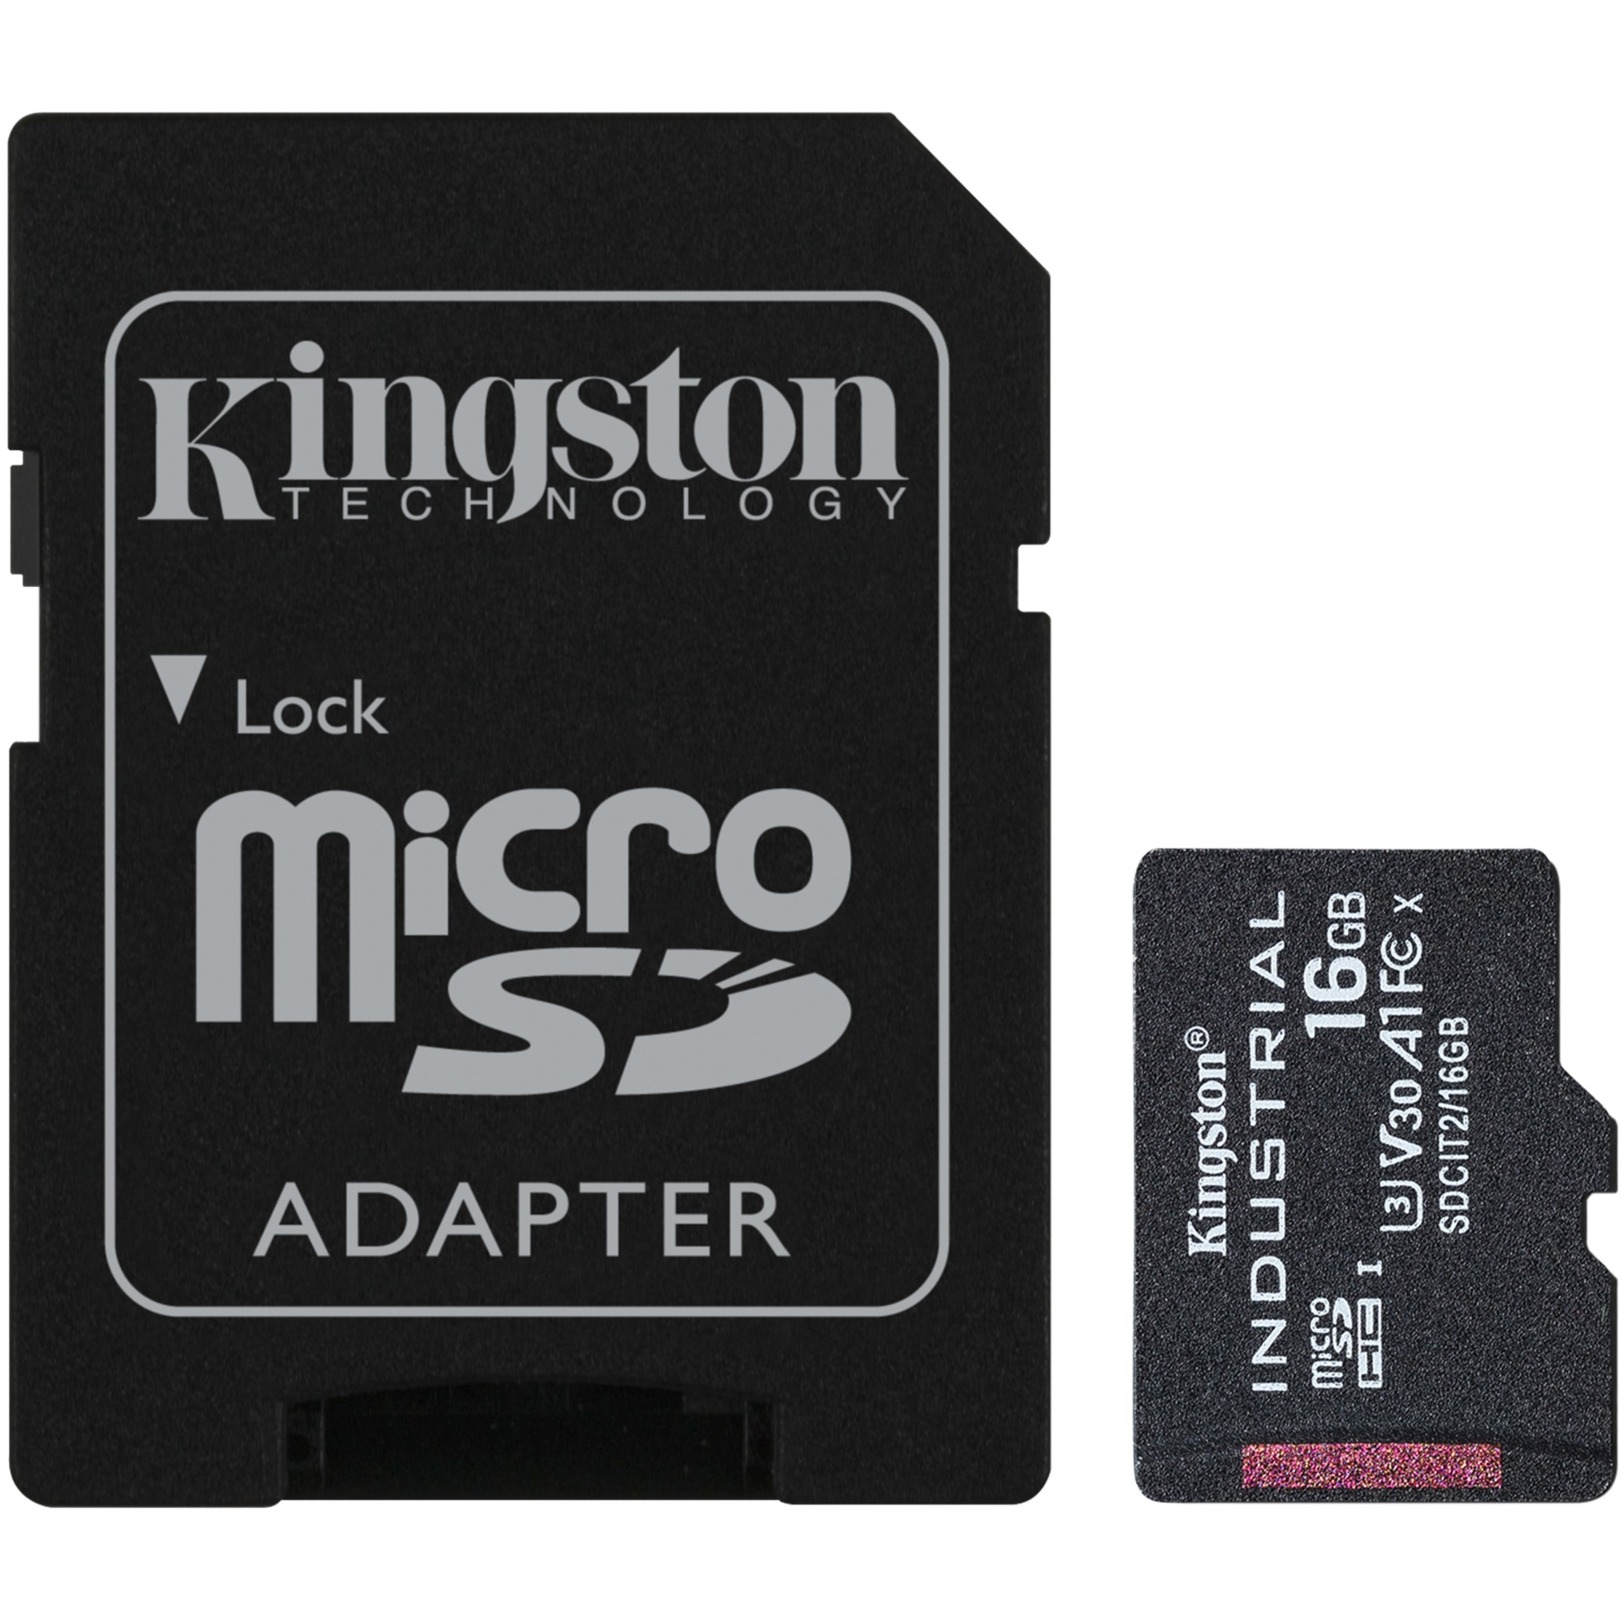 Image of Alternate - Industrial 16 GB microSDHC, Speicherkarte online einkaufen bei Alternate